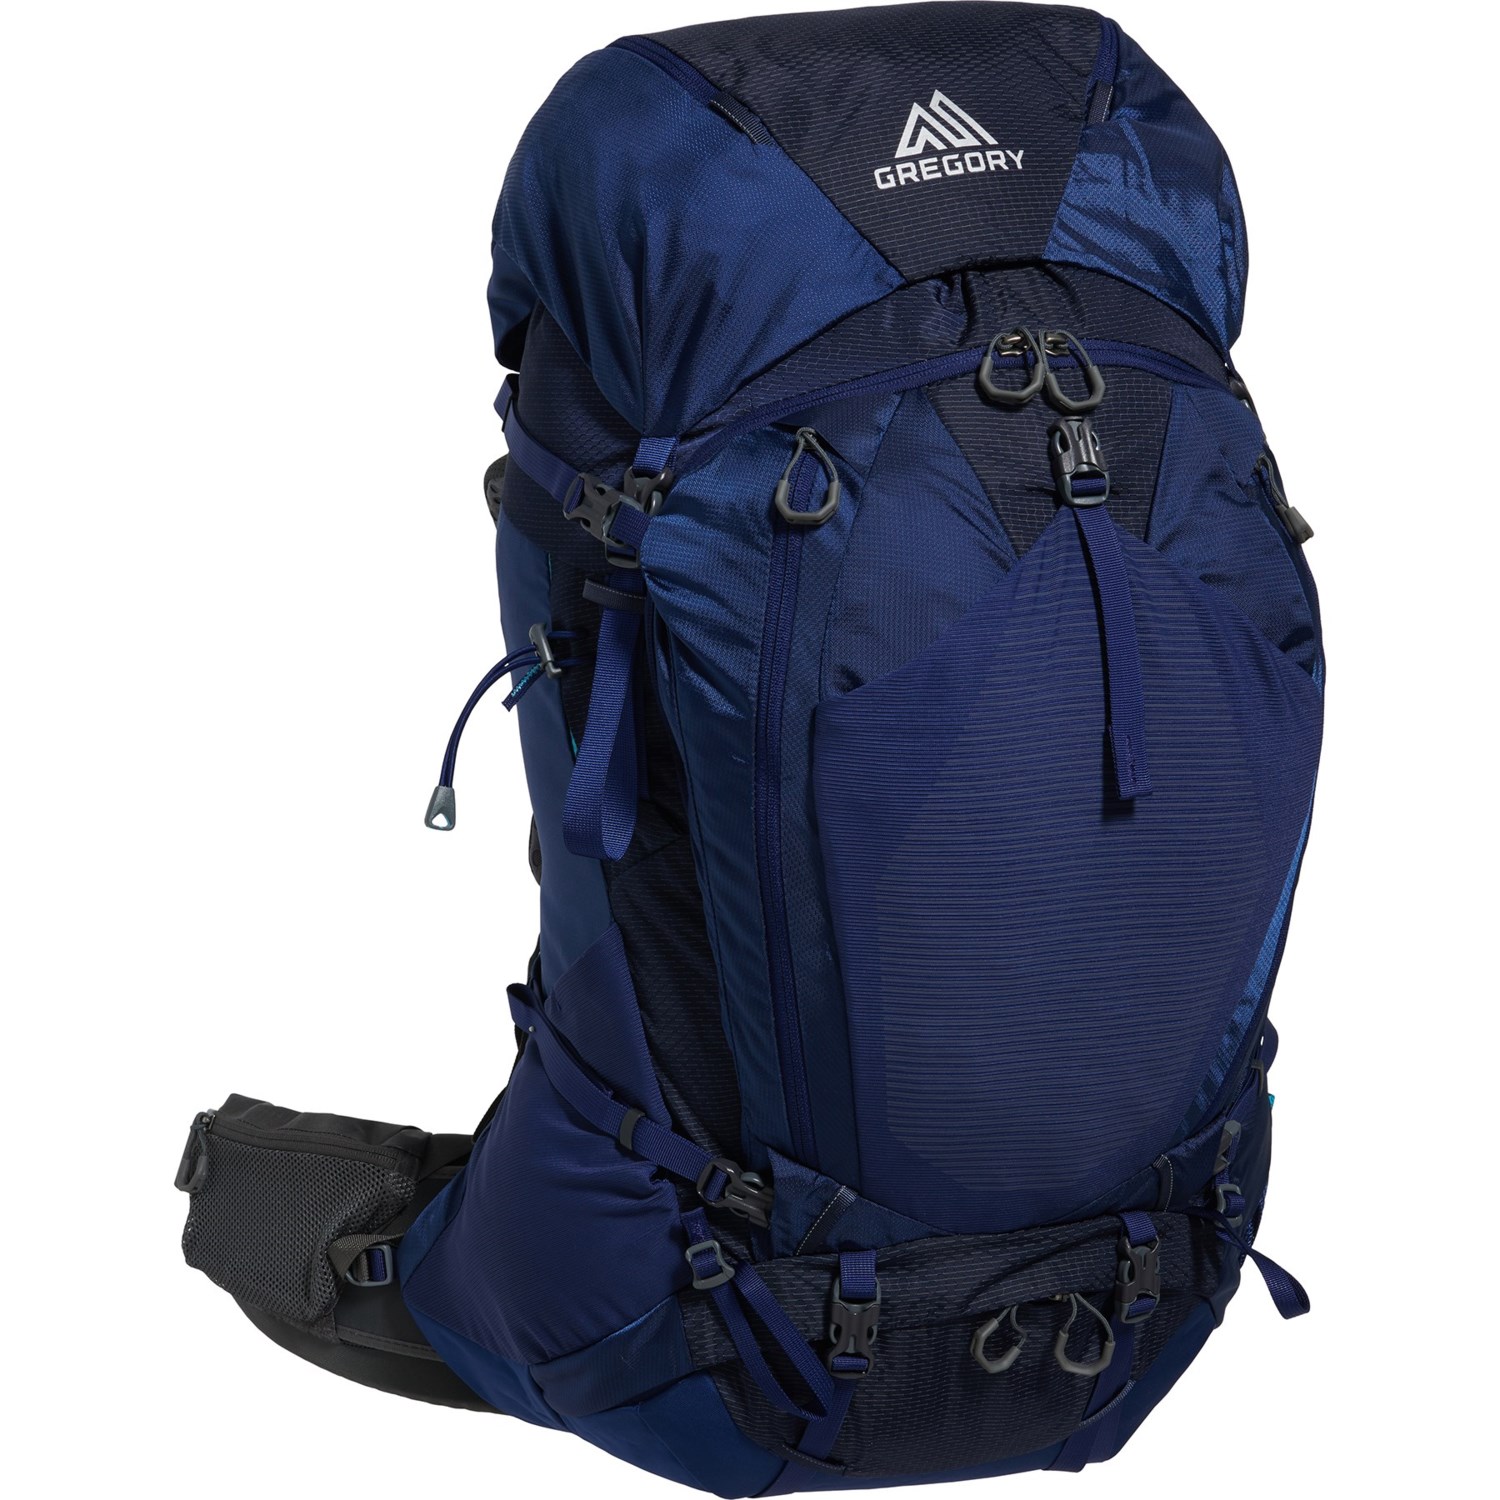 Gregory Deva 60 L Backpack (For Women) - Save 26%